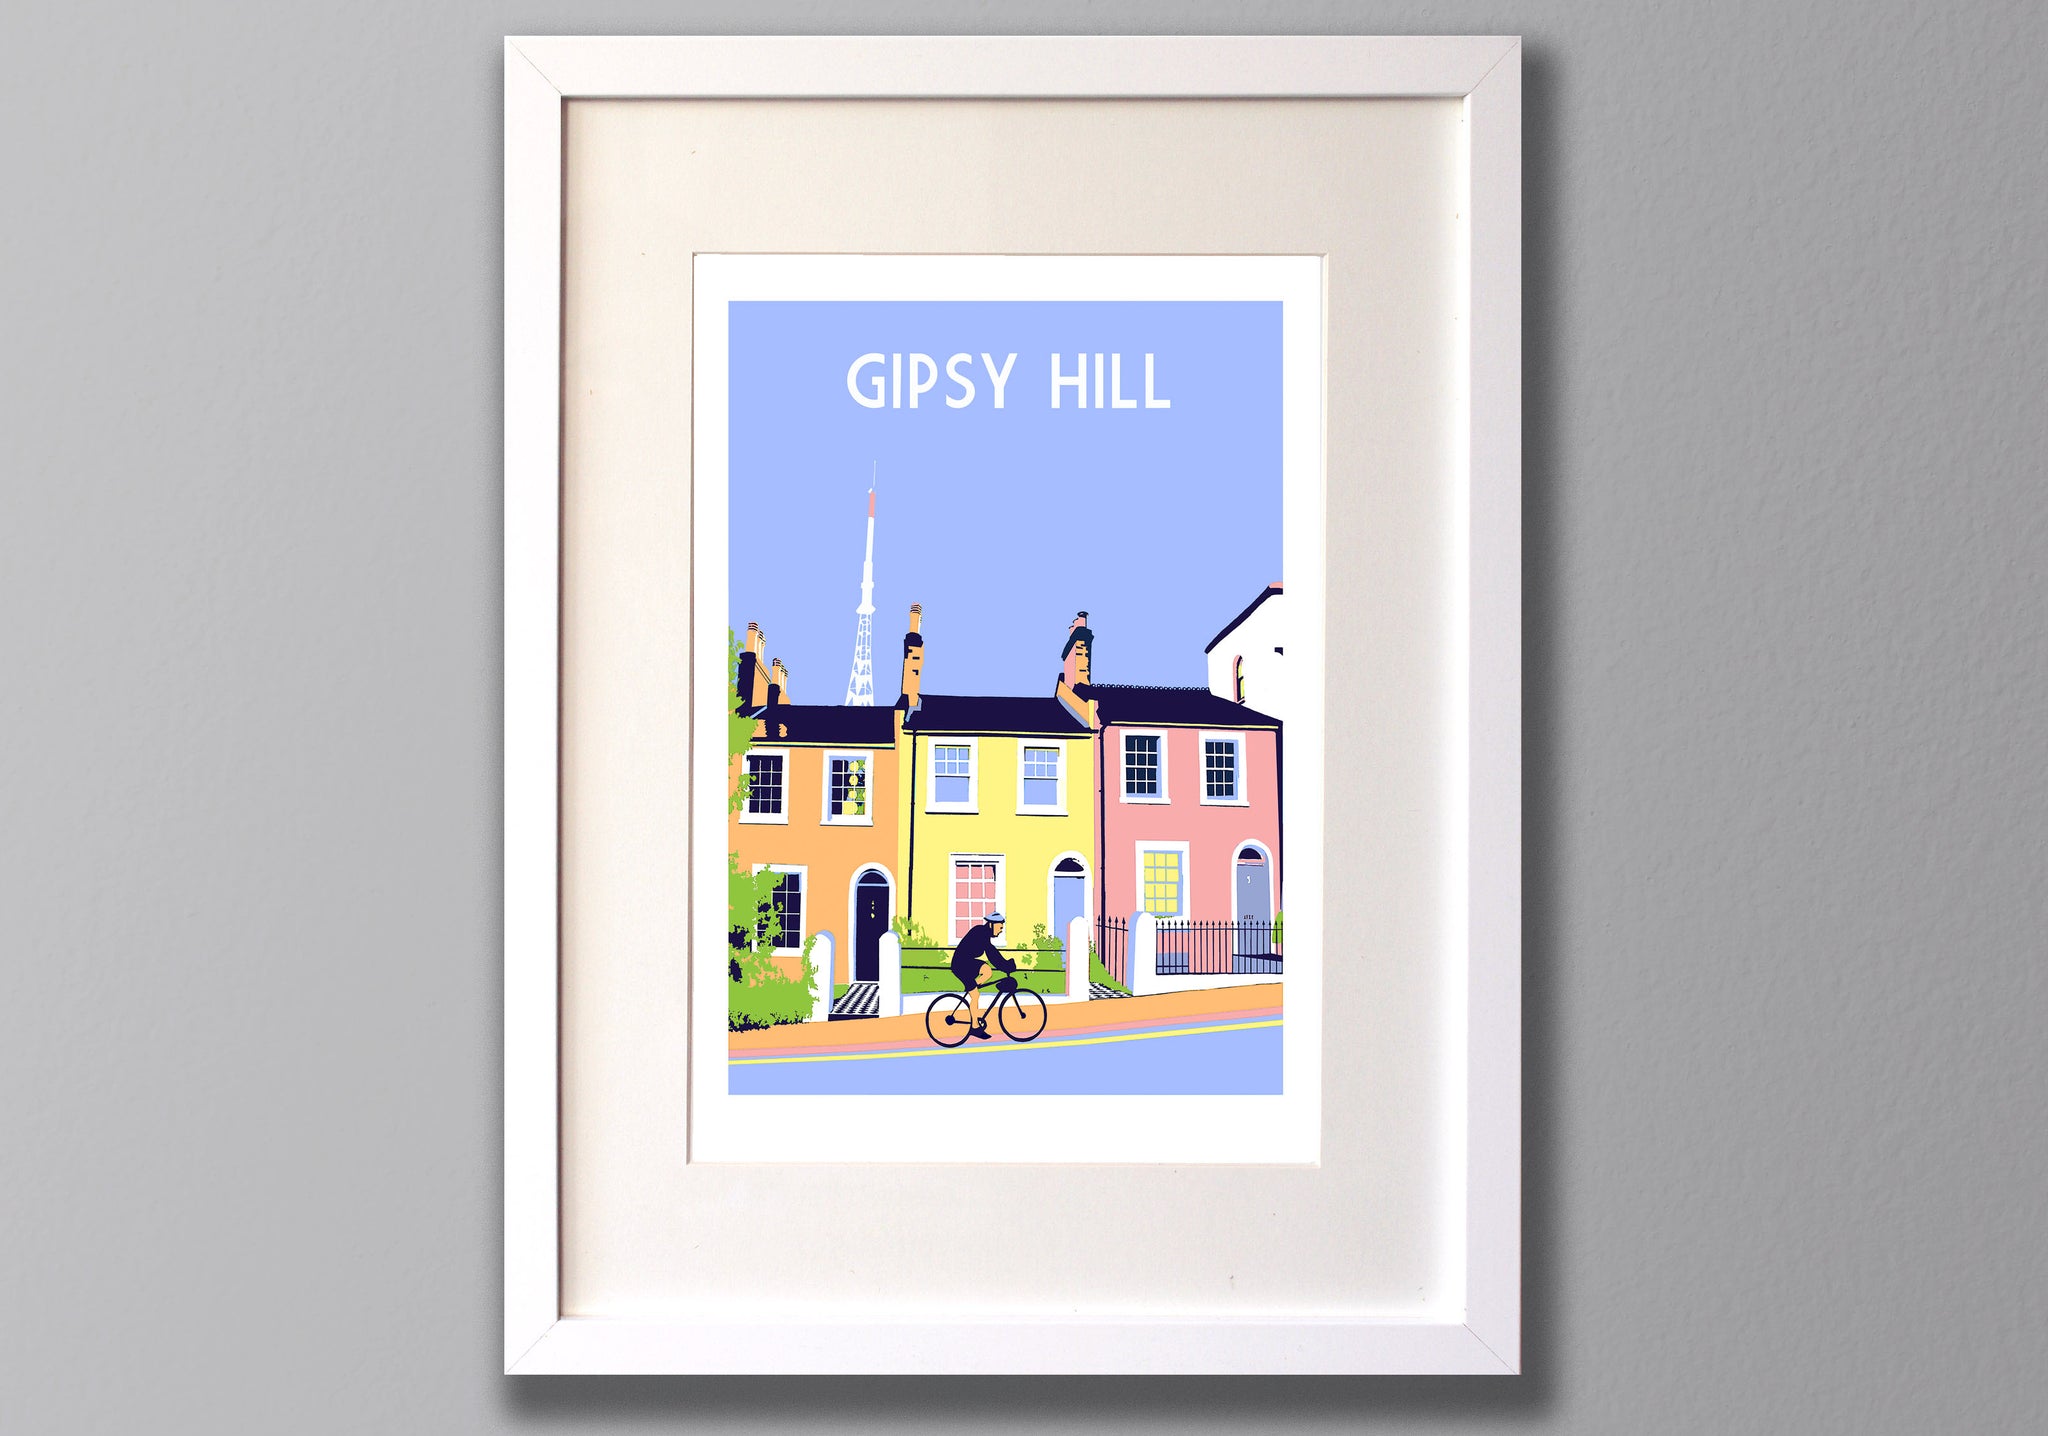 GIpsy Hill Art Print framed